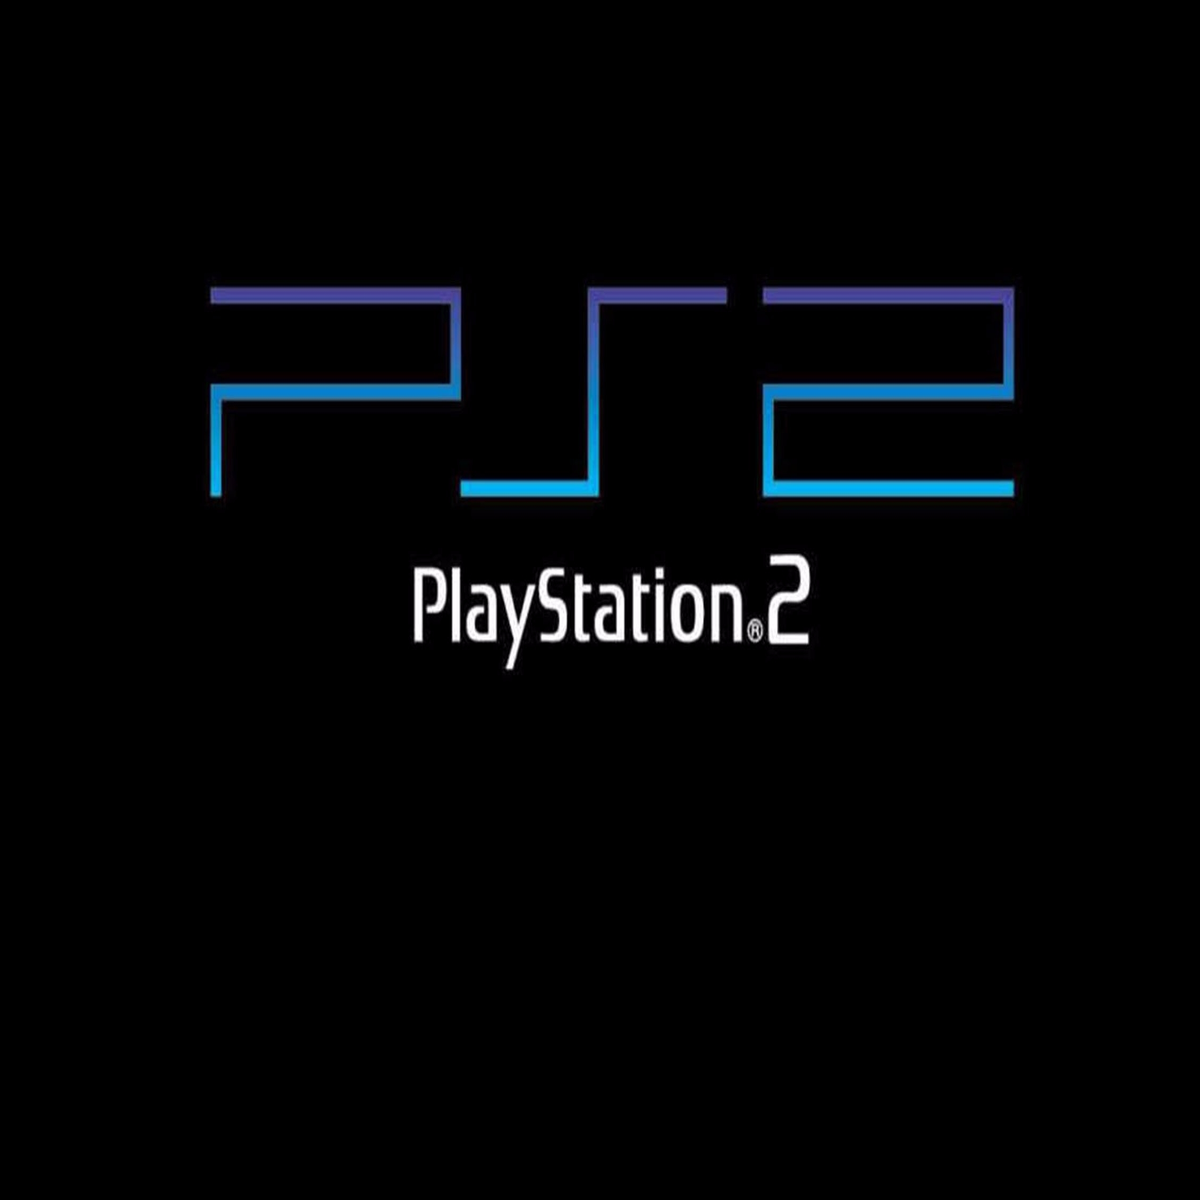 Jogar Playstation 2 no celular é possível? Teste em emuladores